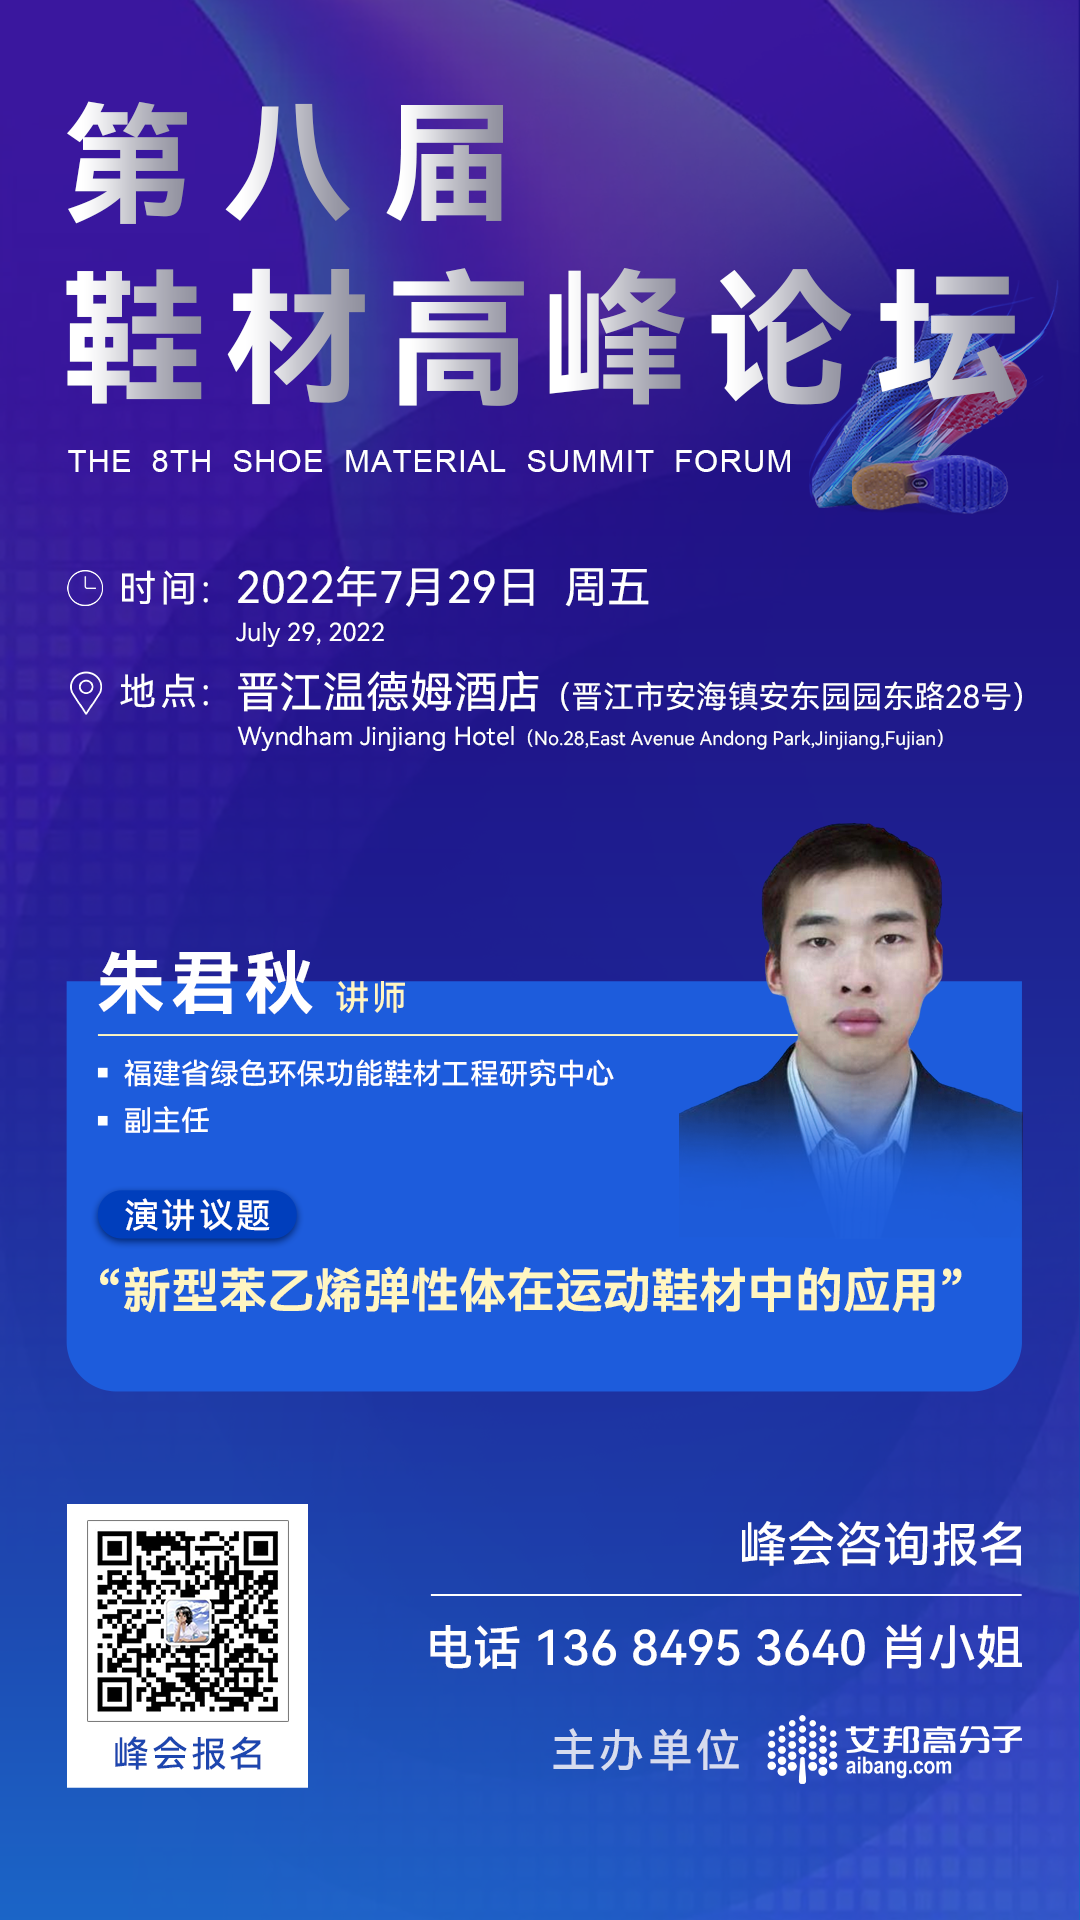 福建省绿色环保功能鞋材工程研究中心将出席第八届鞋材高峰论坛并做主题演讲